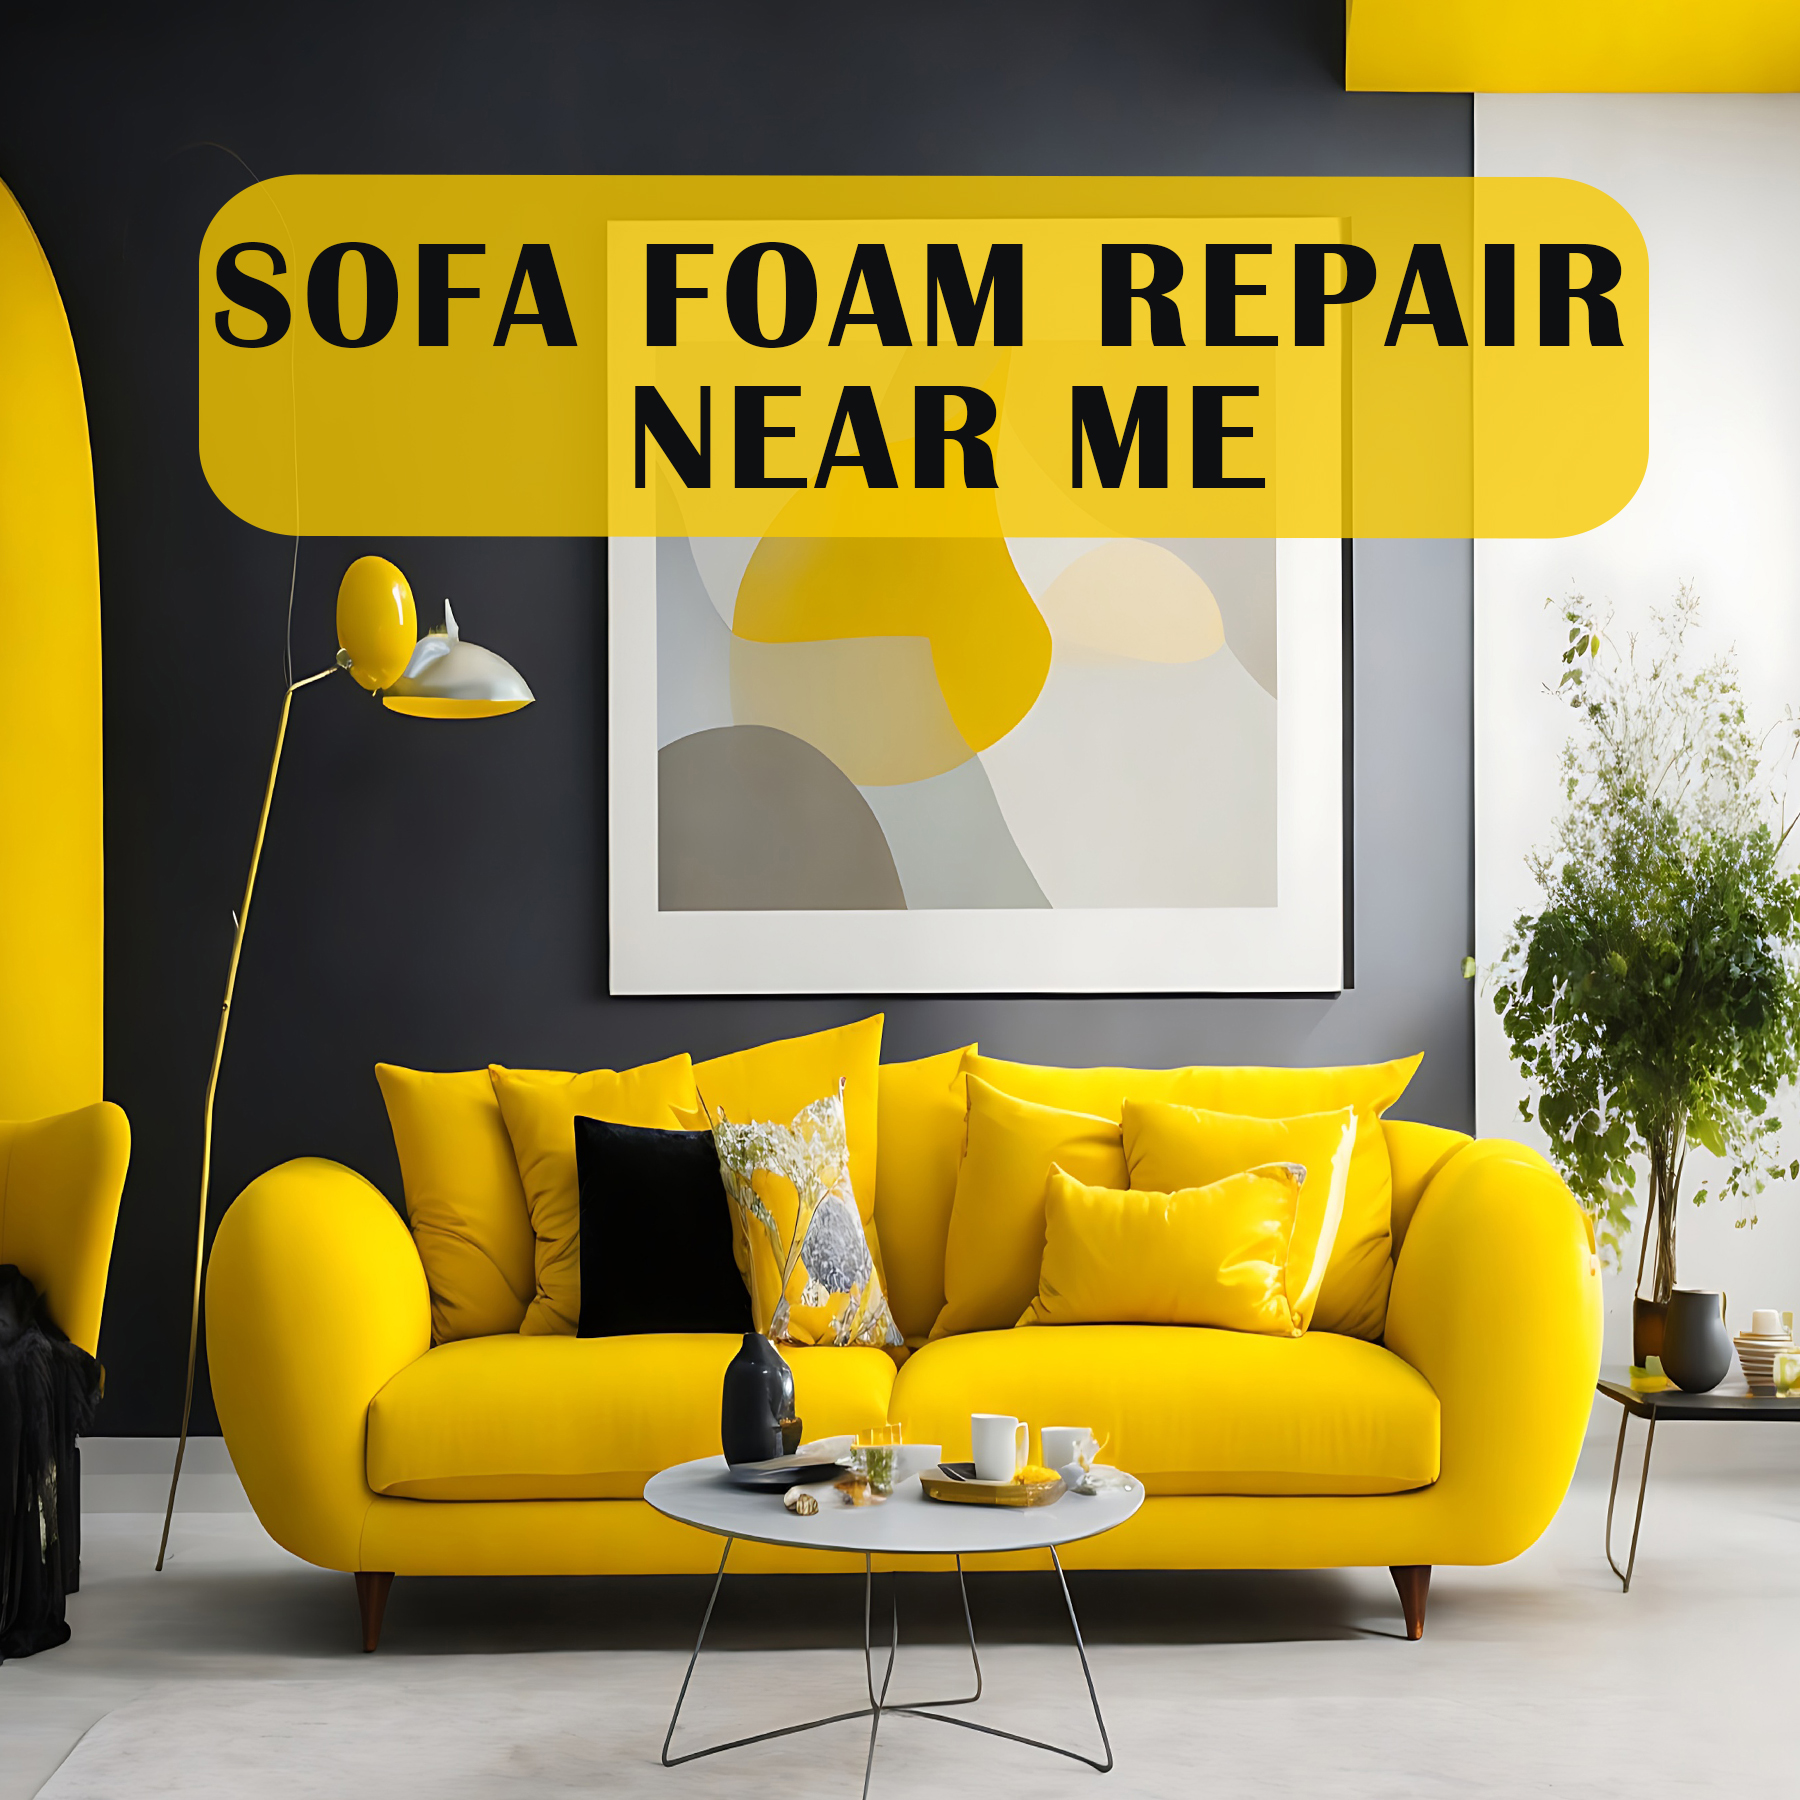 Sofa Foam Repair near Me